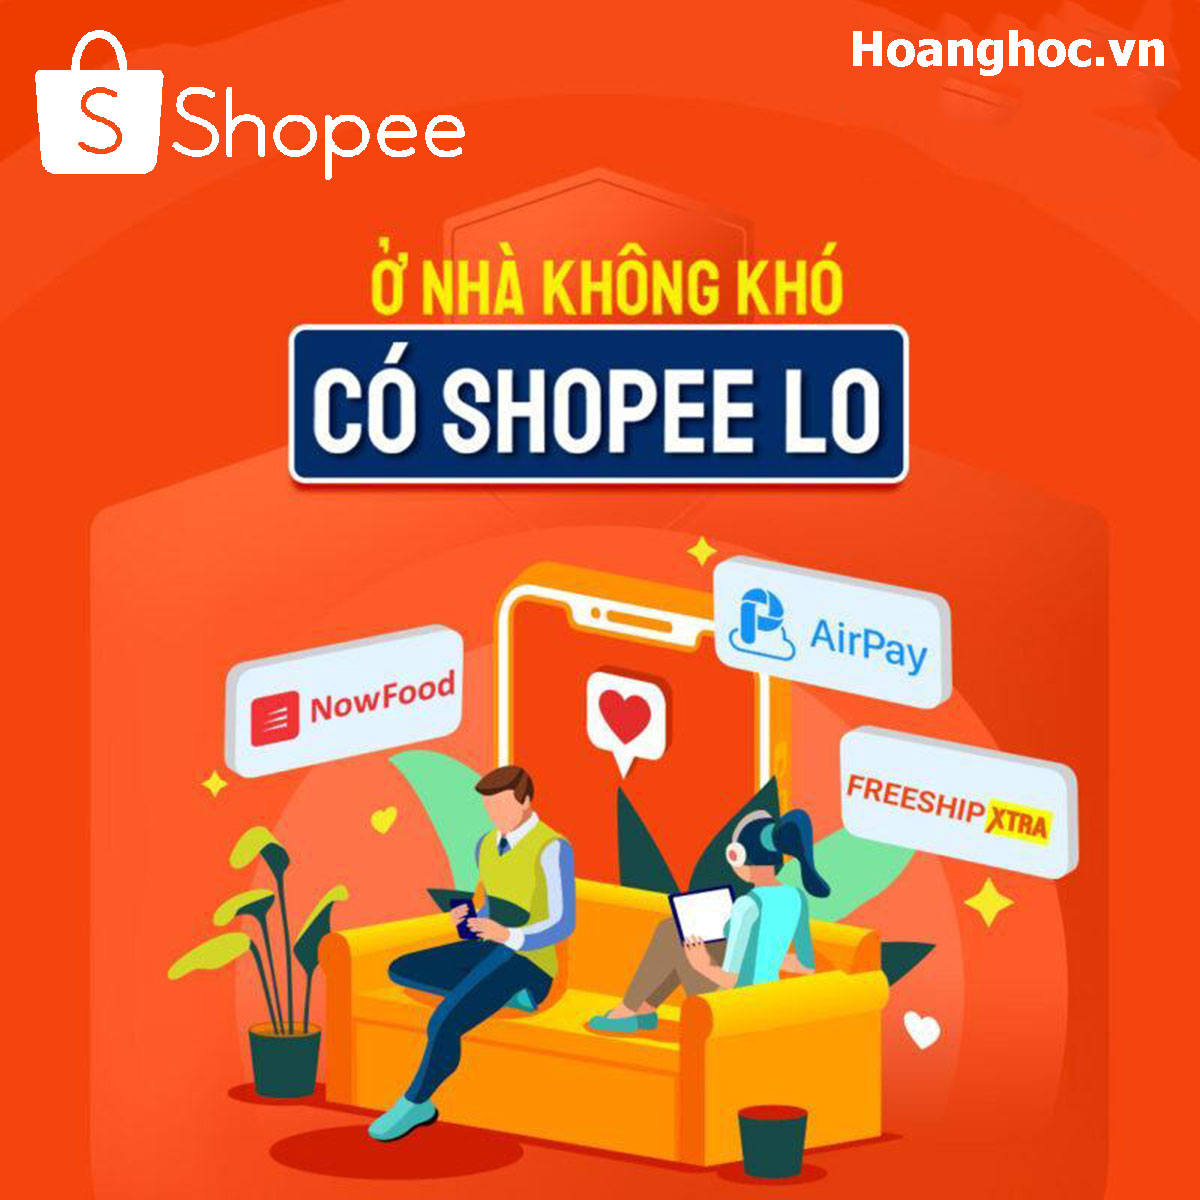 Tìm hiểu về Shopee: Những điều cần biết về sàn thương mại điện tử Shopee